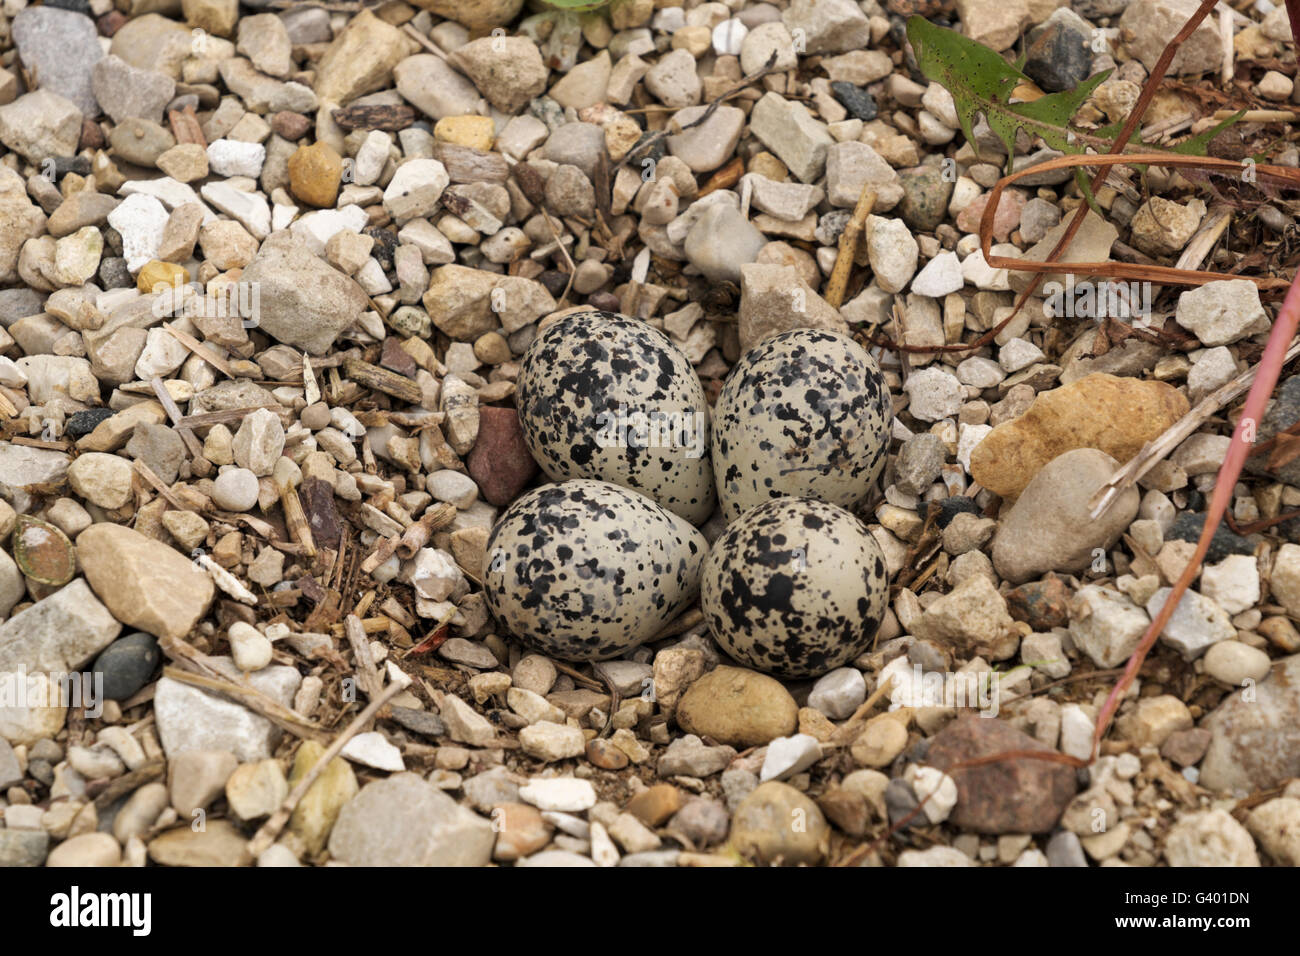 Killdeer nest with four eggs on a northern Illlinois farm. Stock Photo